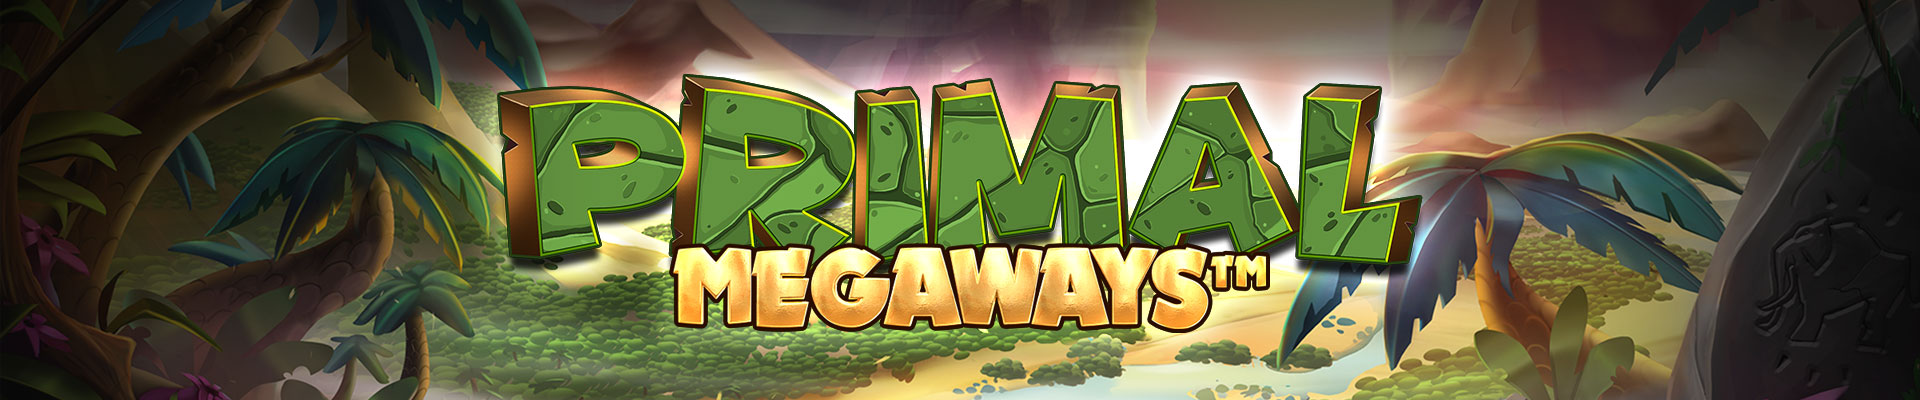 Primal Megaways uk slot game